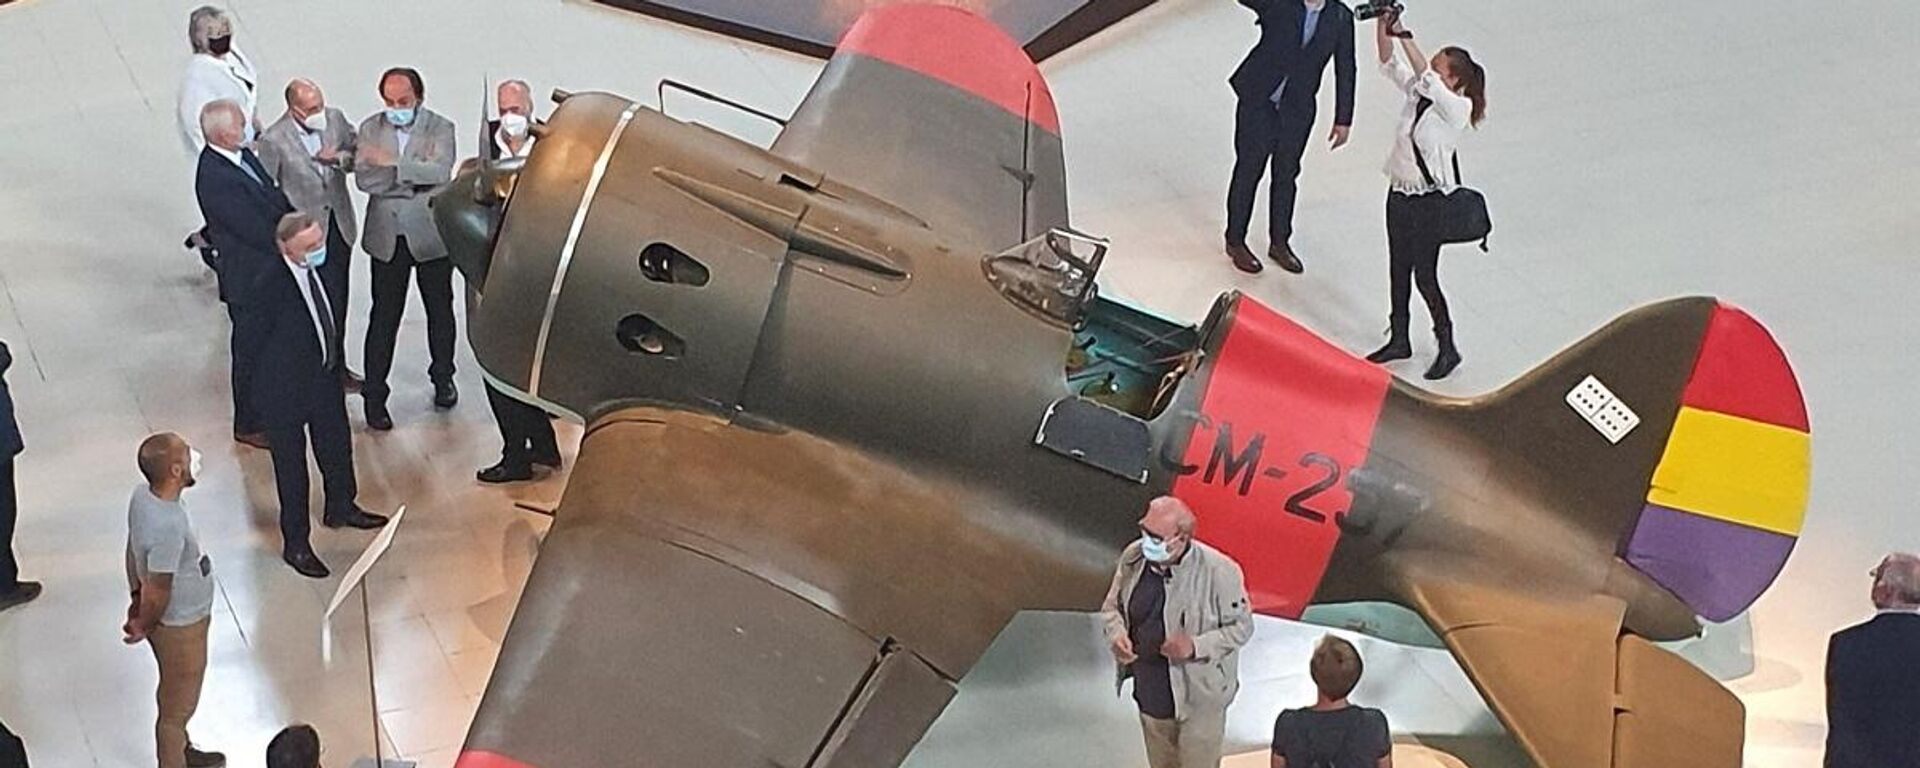 El Museo Nacional de Cataluña expone dos réplicas de aviones soviéticos de la Guerra Civil - Sputnik Mundo, 1920, 16.07.2021